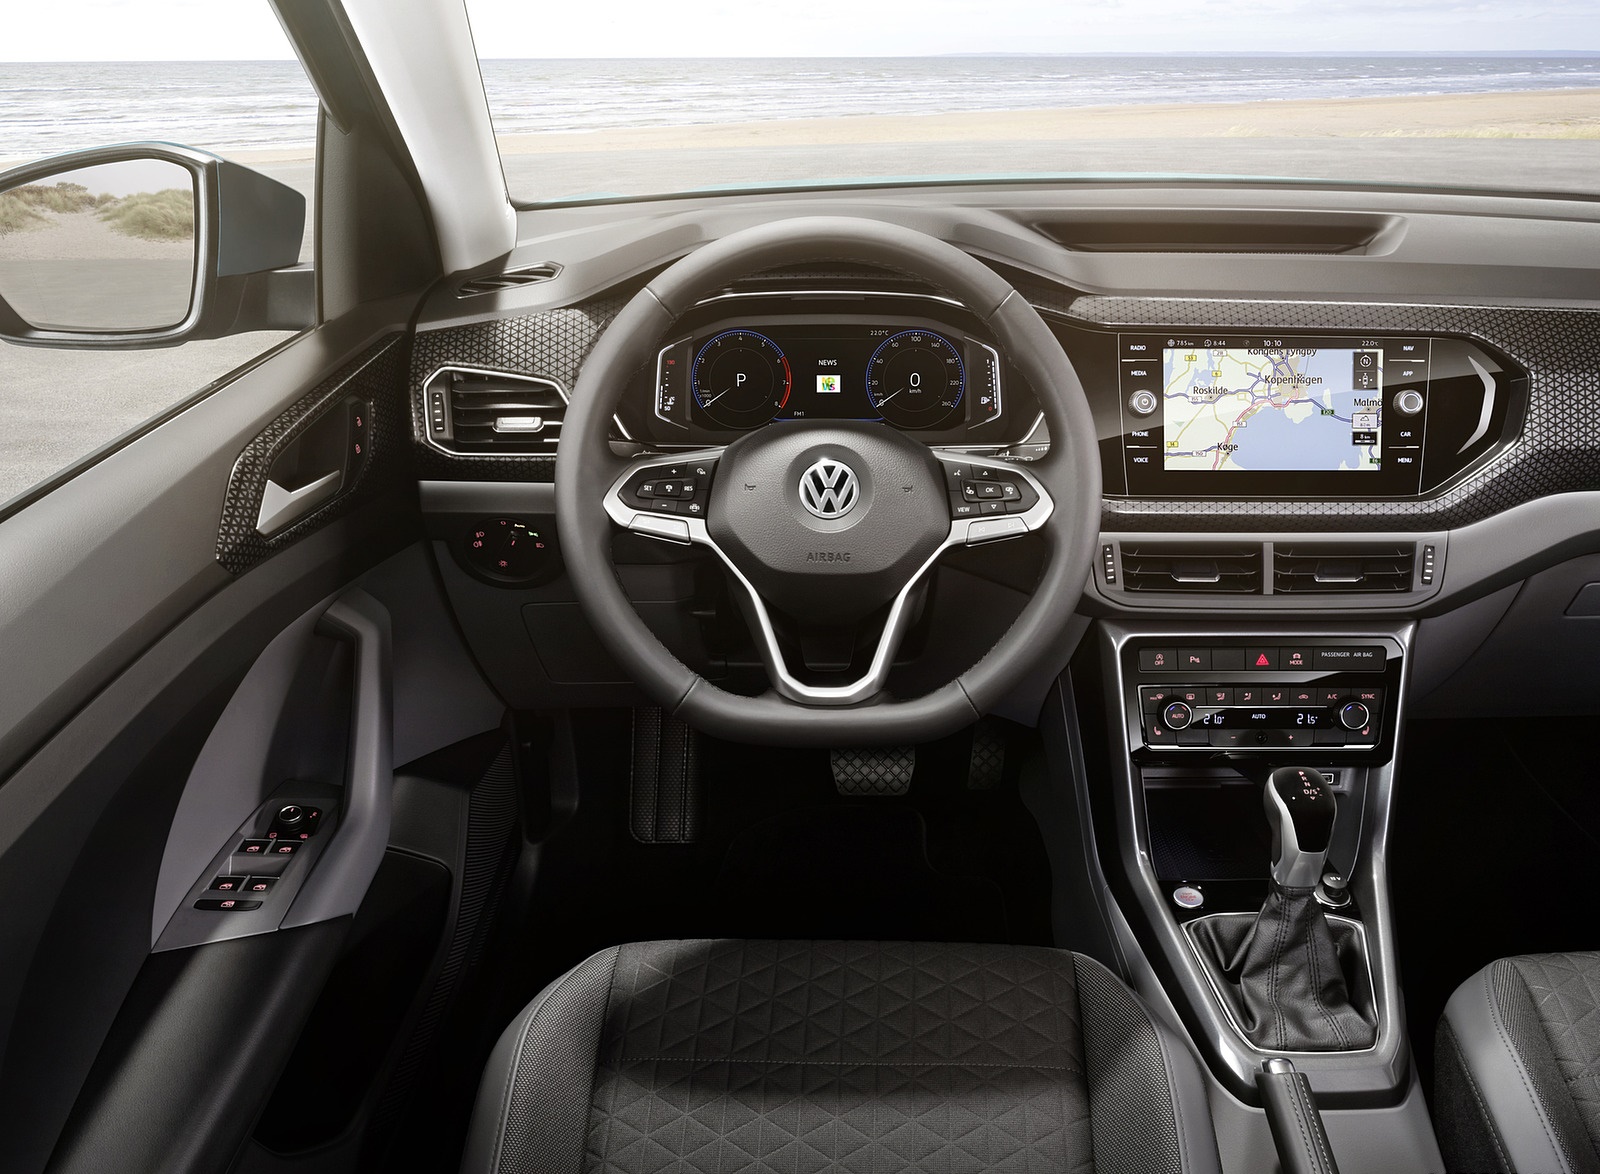 2019 Volkswagen T-Cross Interior Cockpit Wallpapers #73 of 74